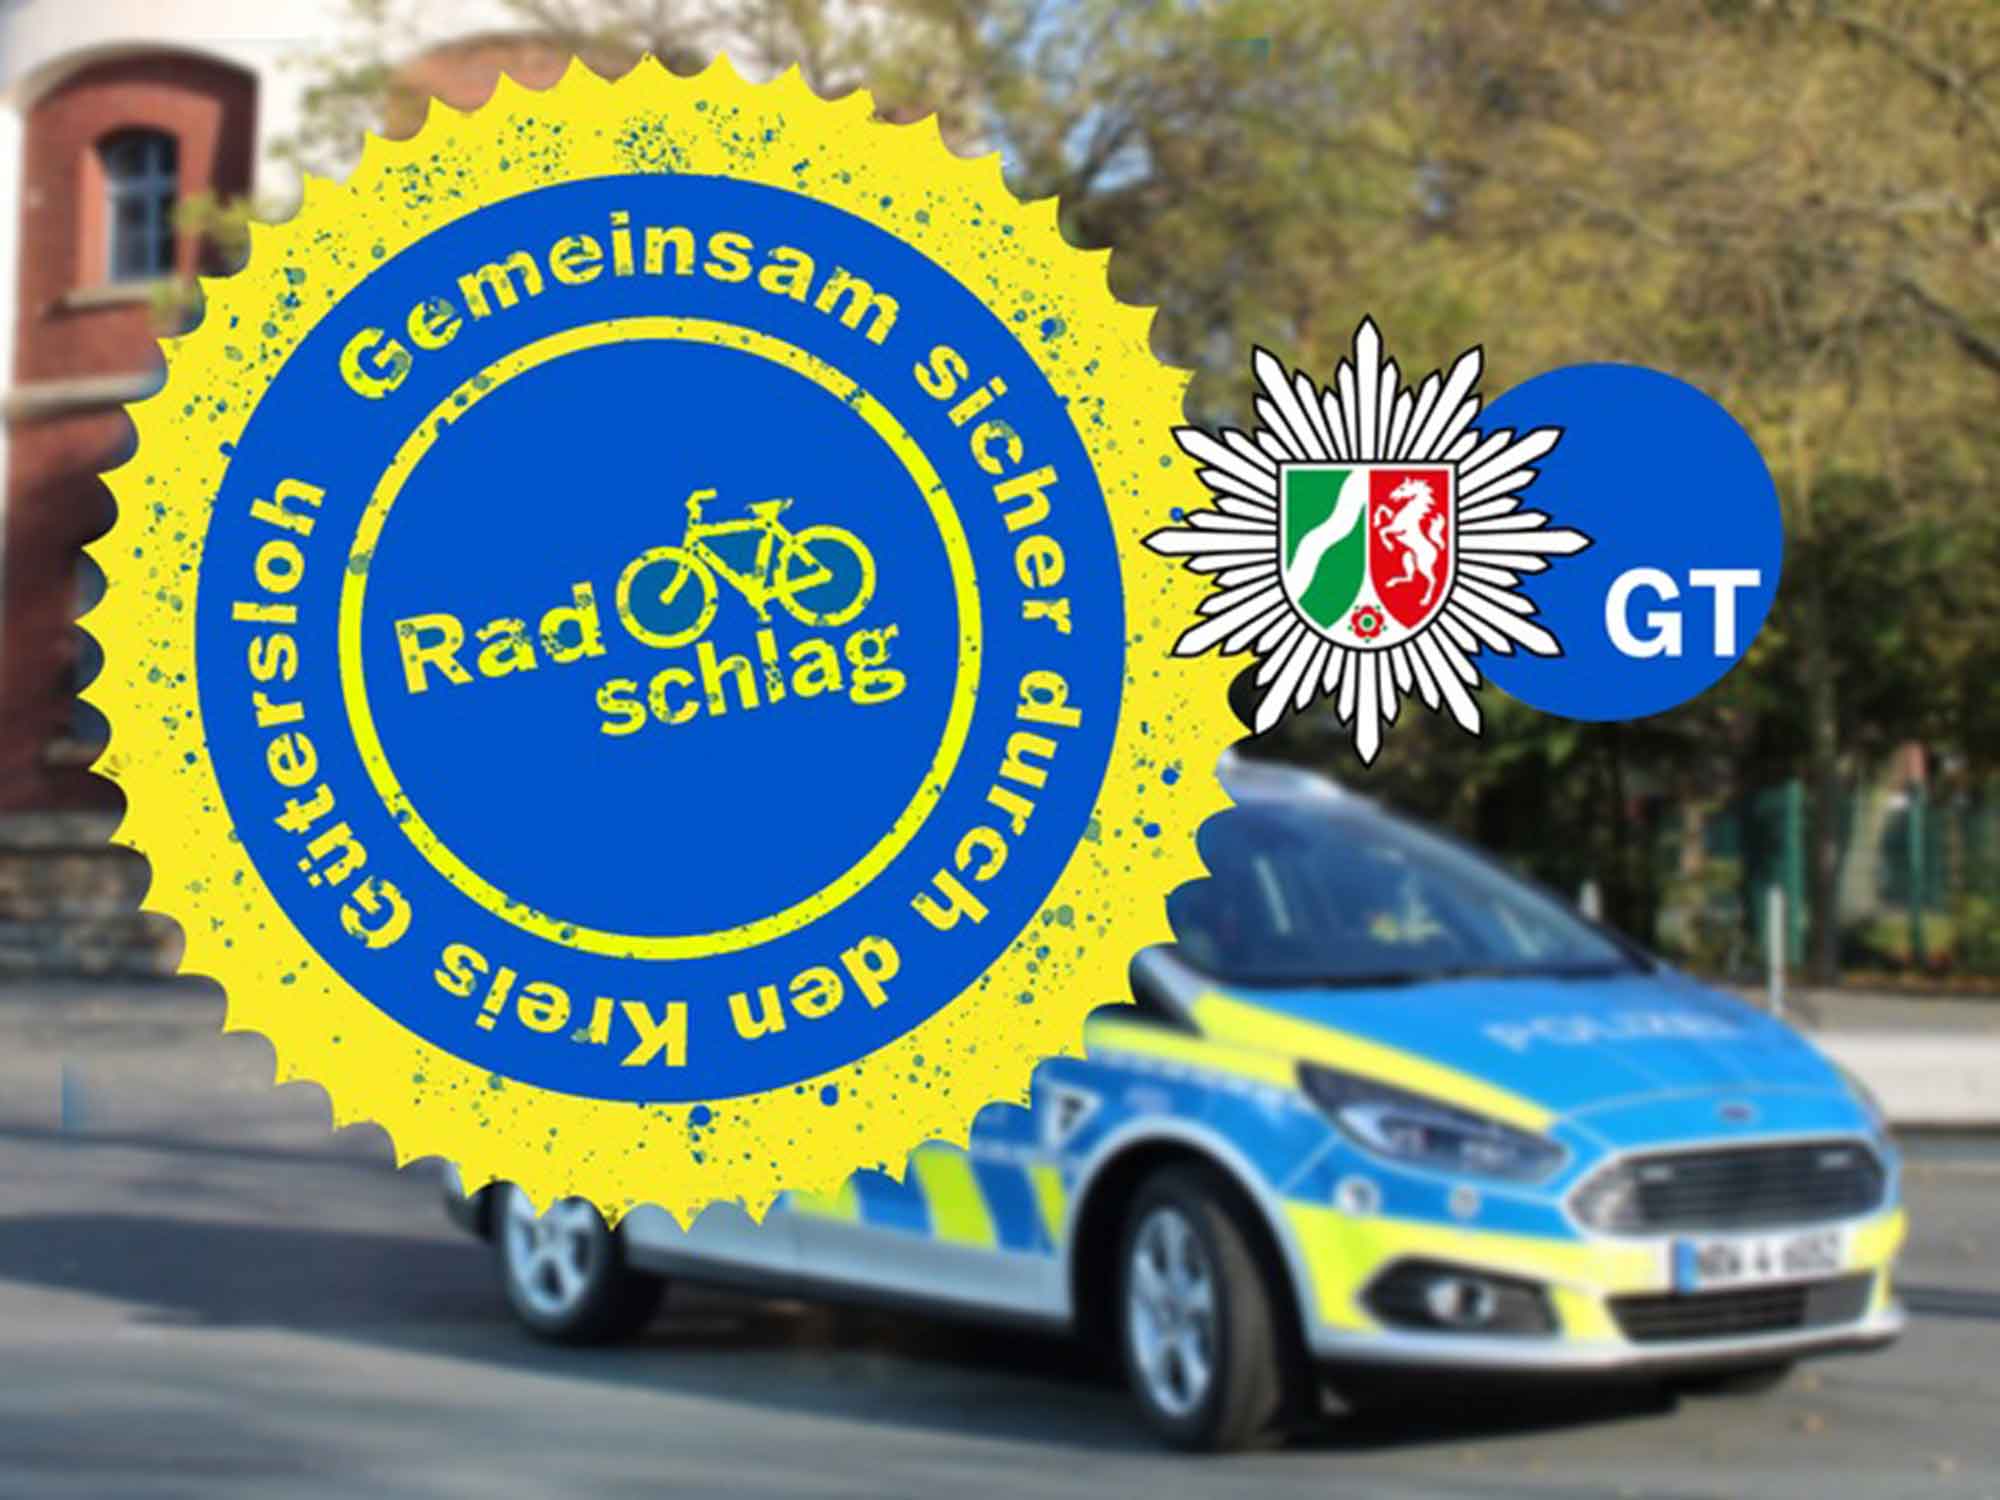 Polizei Gütersloh: Beleuchtungskontrollen an der Sekundarschule in Versmold – Aktion Radschlag